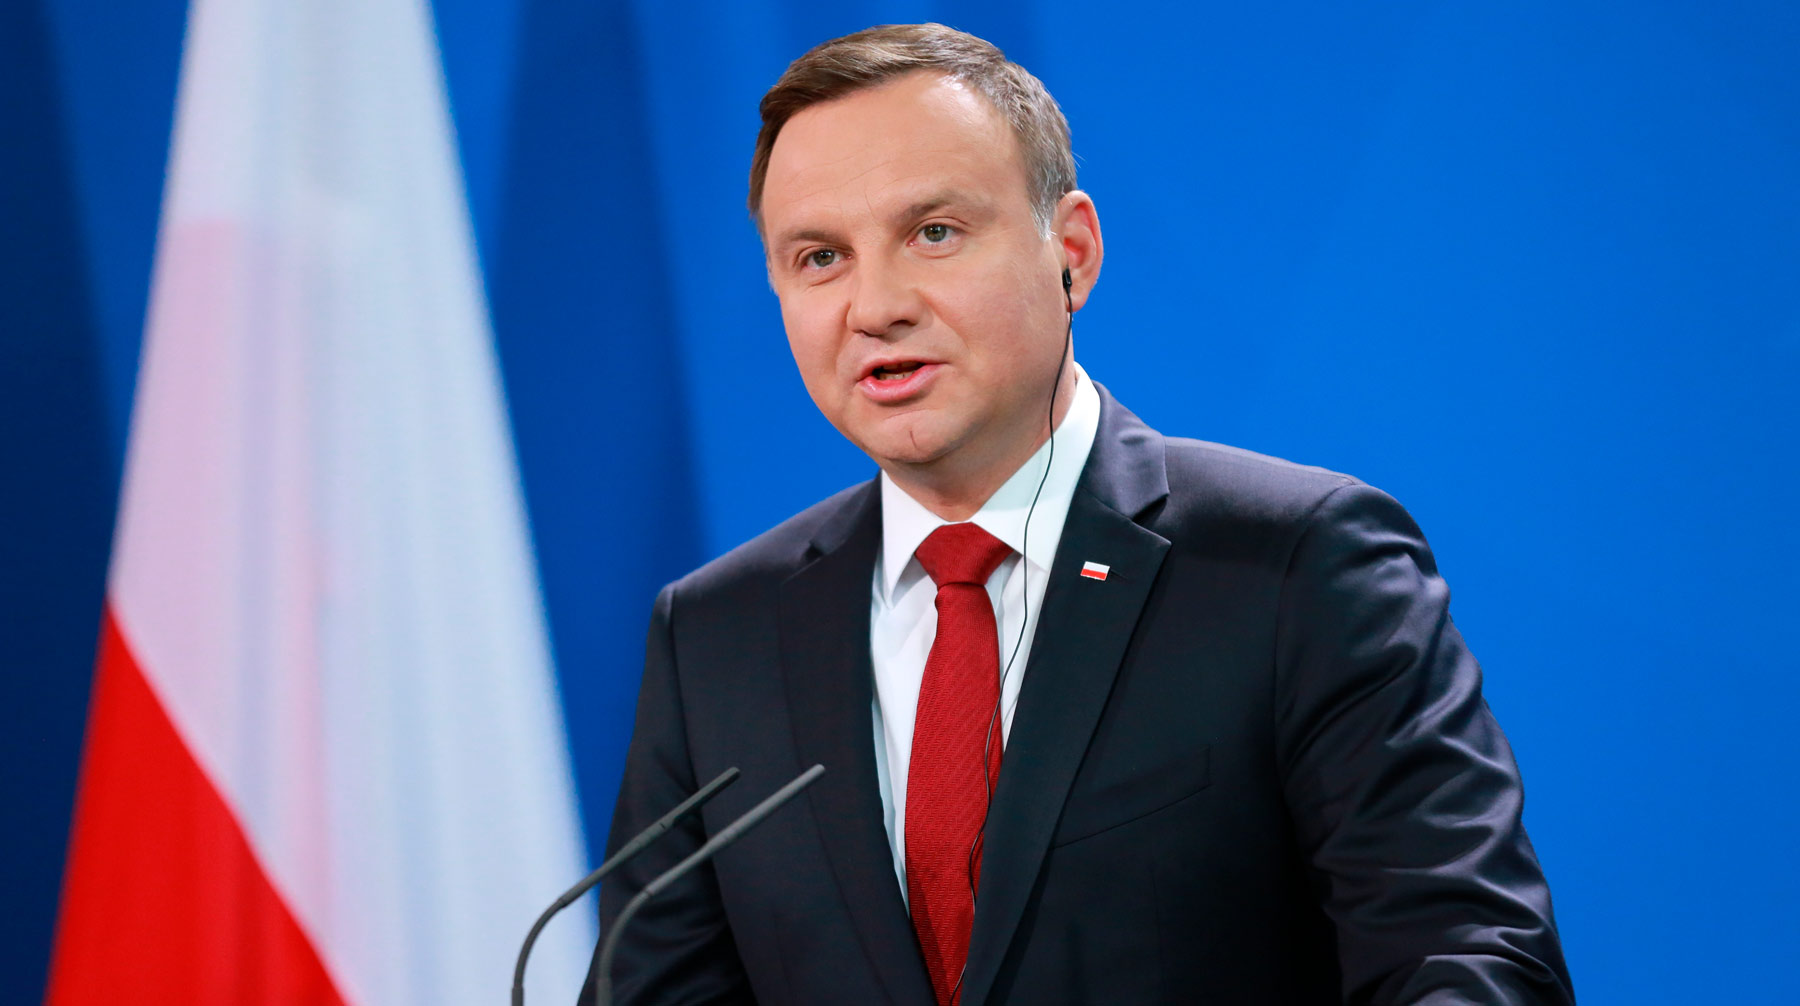 Политик признал, что у Украины нет современной военной инфраструктуры Президент Польши Анджей Дуда